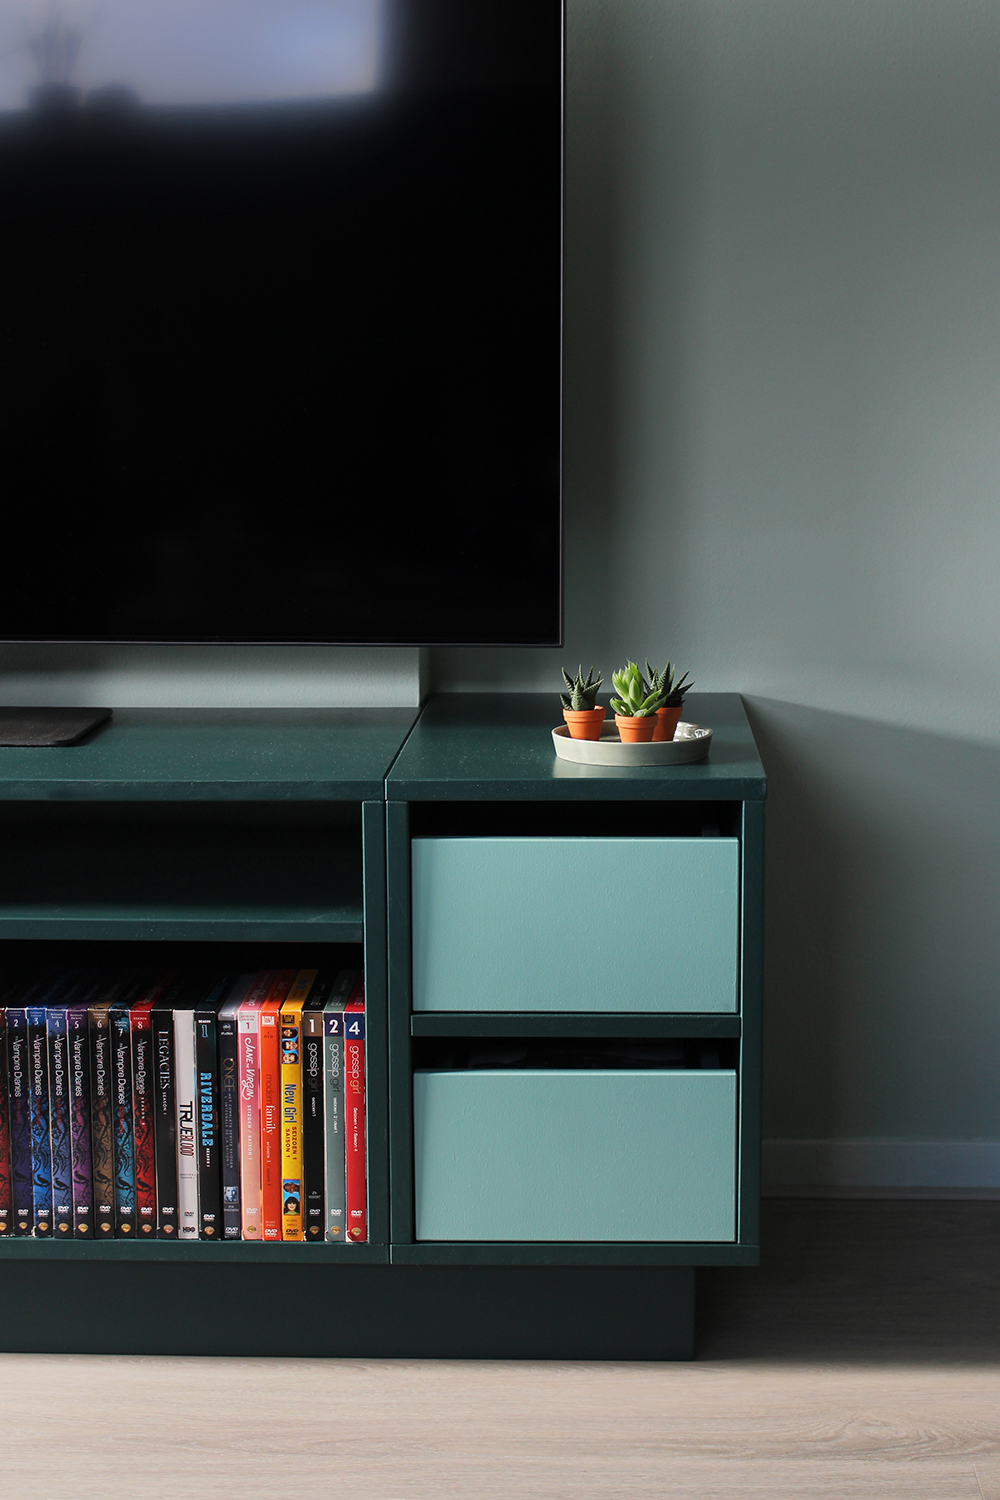 Maatwerk tv kast in donkergroene kleur. Lades geschilderd in mint groen. Uniek ontwerp voor interieur